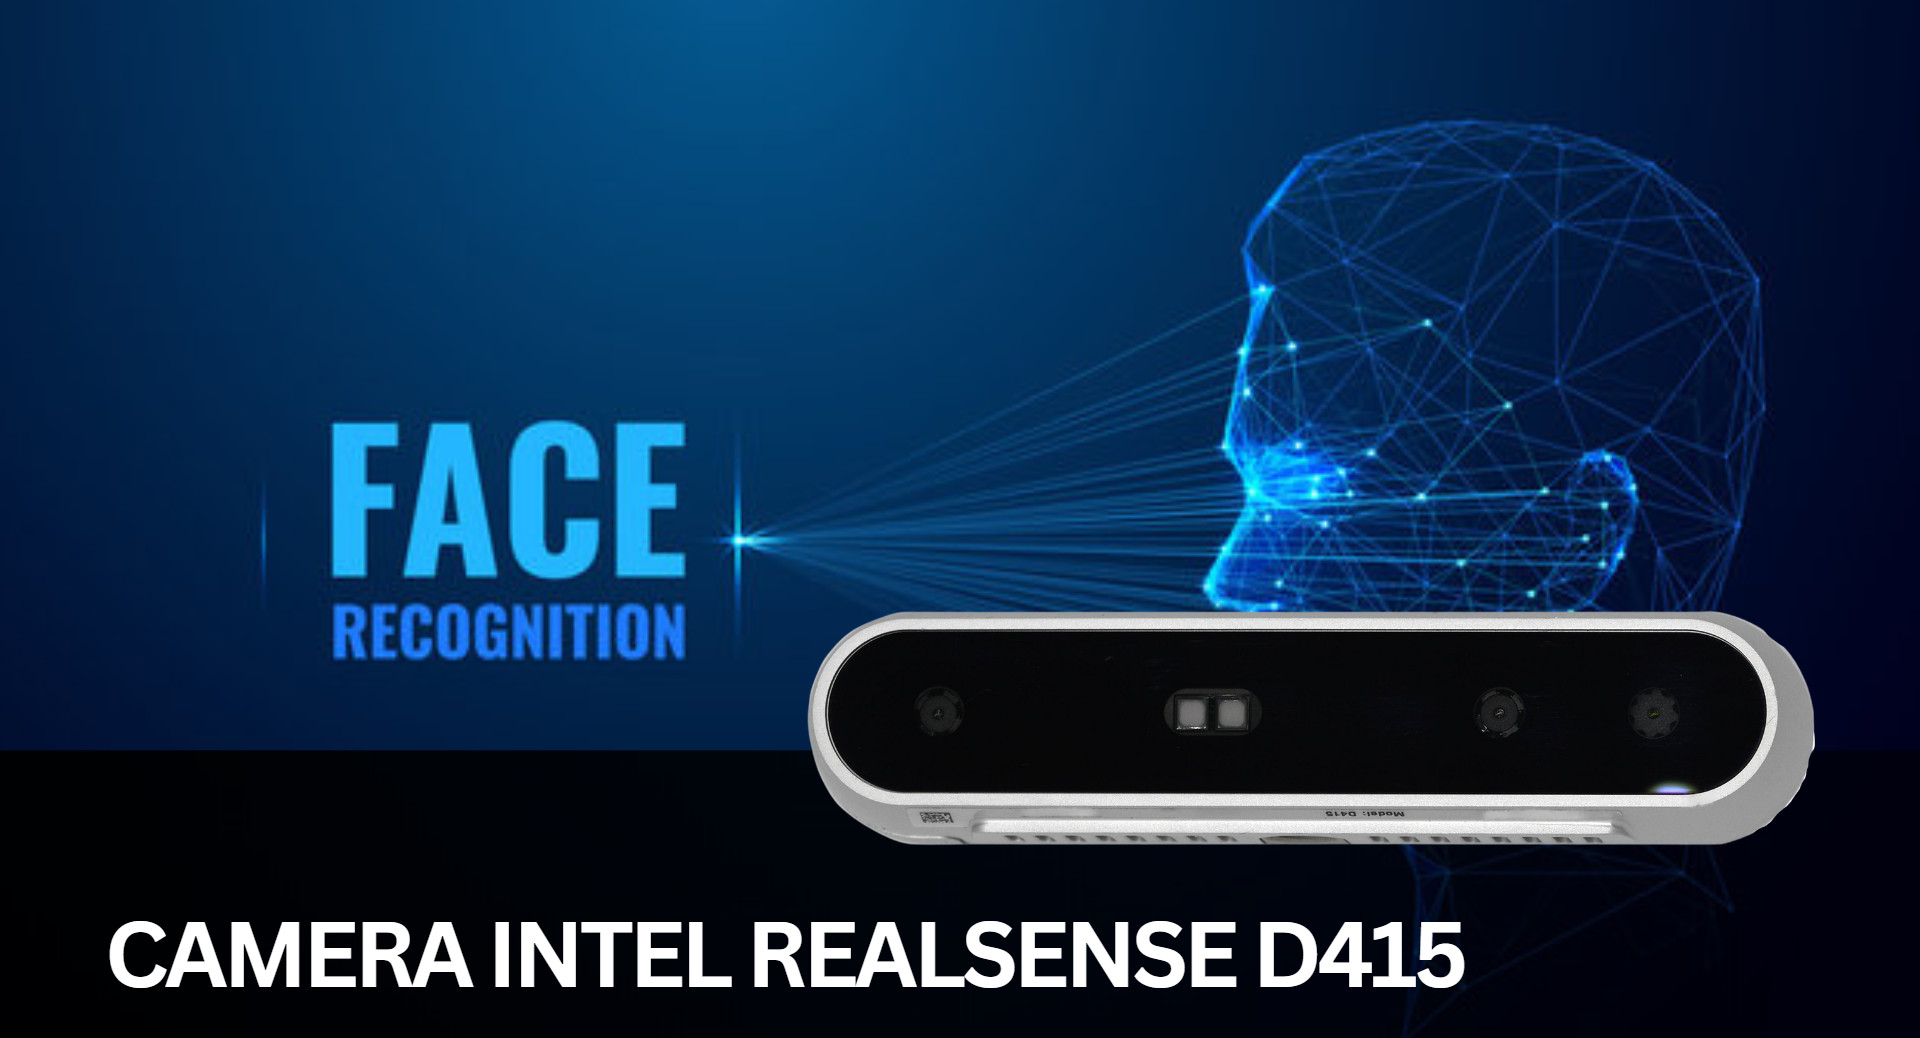 🔥Camera Intel RealSense D415 là một sản phẩm tuyệt vời trong lĩnh vực thị giác máy tính và AI. Với khả năng chụp hình 3D chất lượng cao và tích hợp công nghệ AI